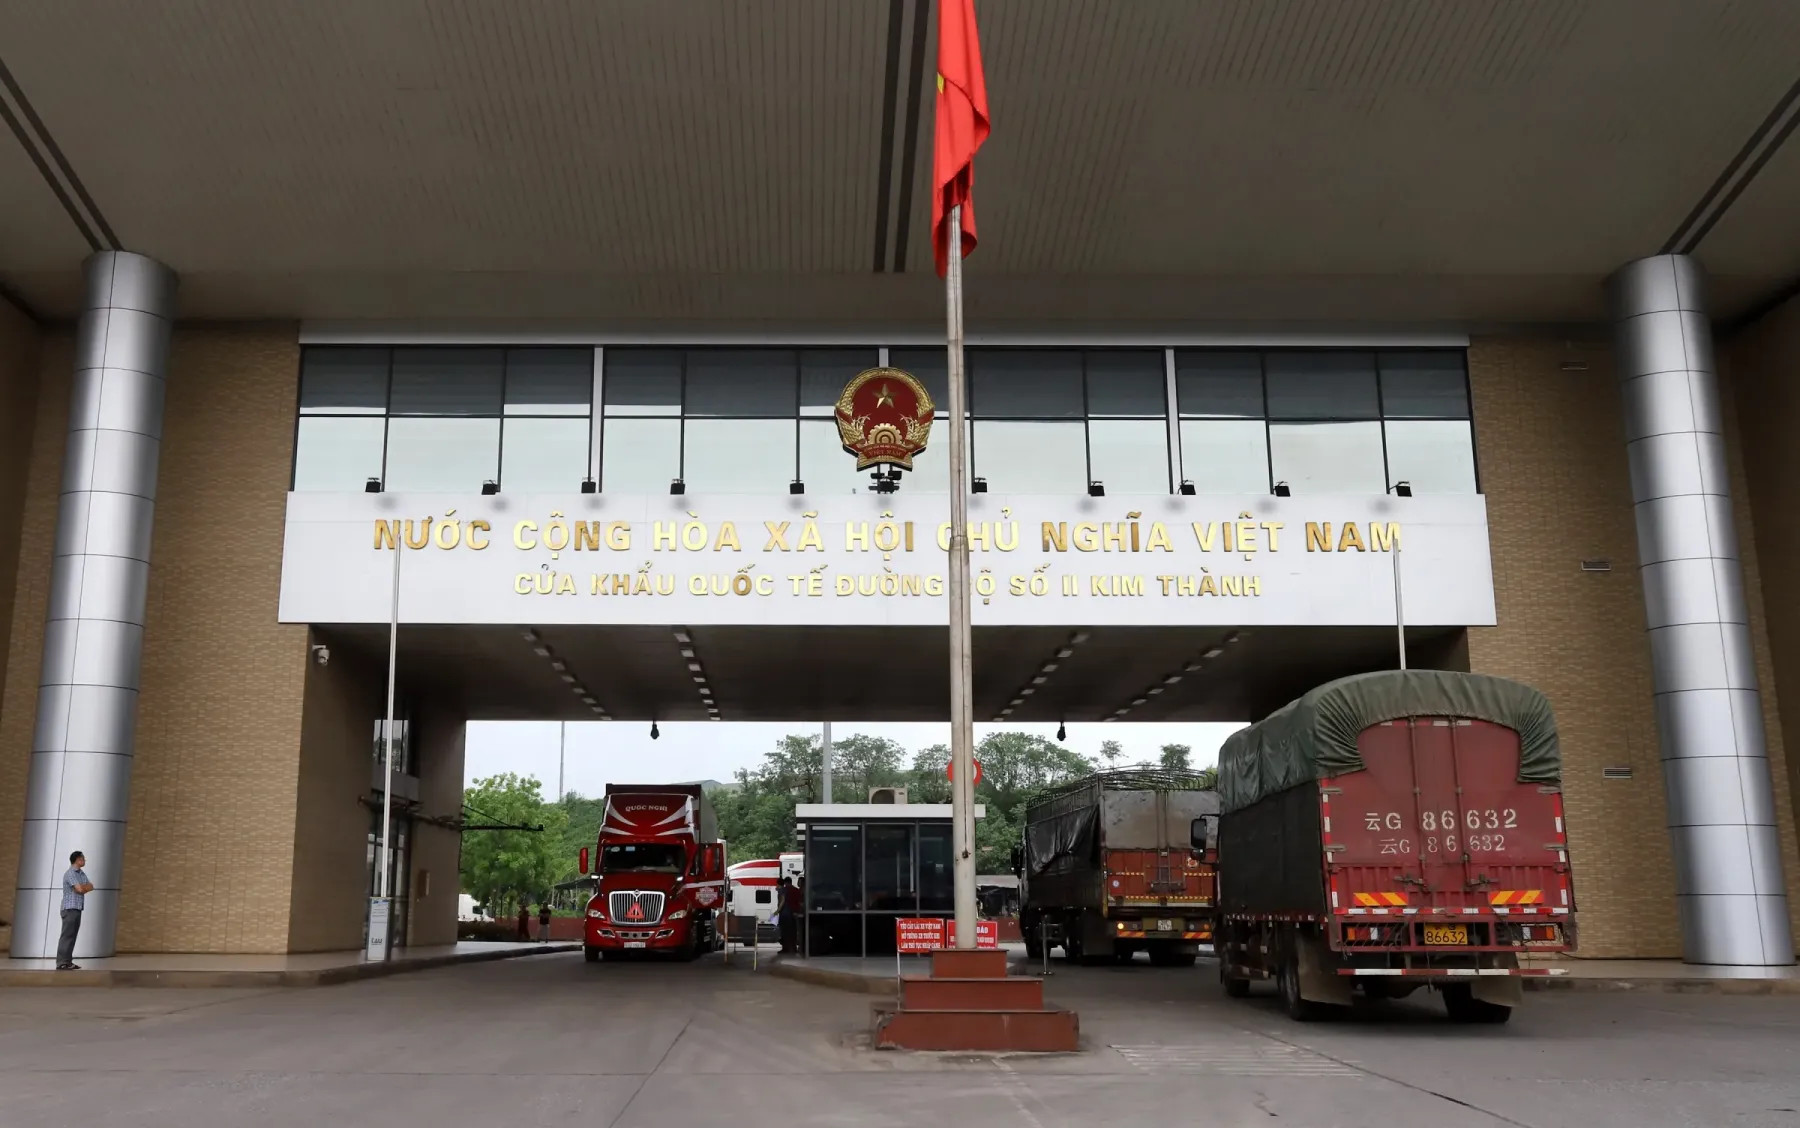 Cửa khẩu quốc tế đường bộ số II Kim Thành - Lào Cai